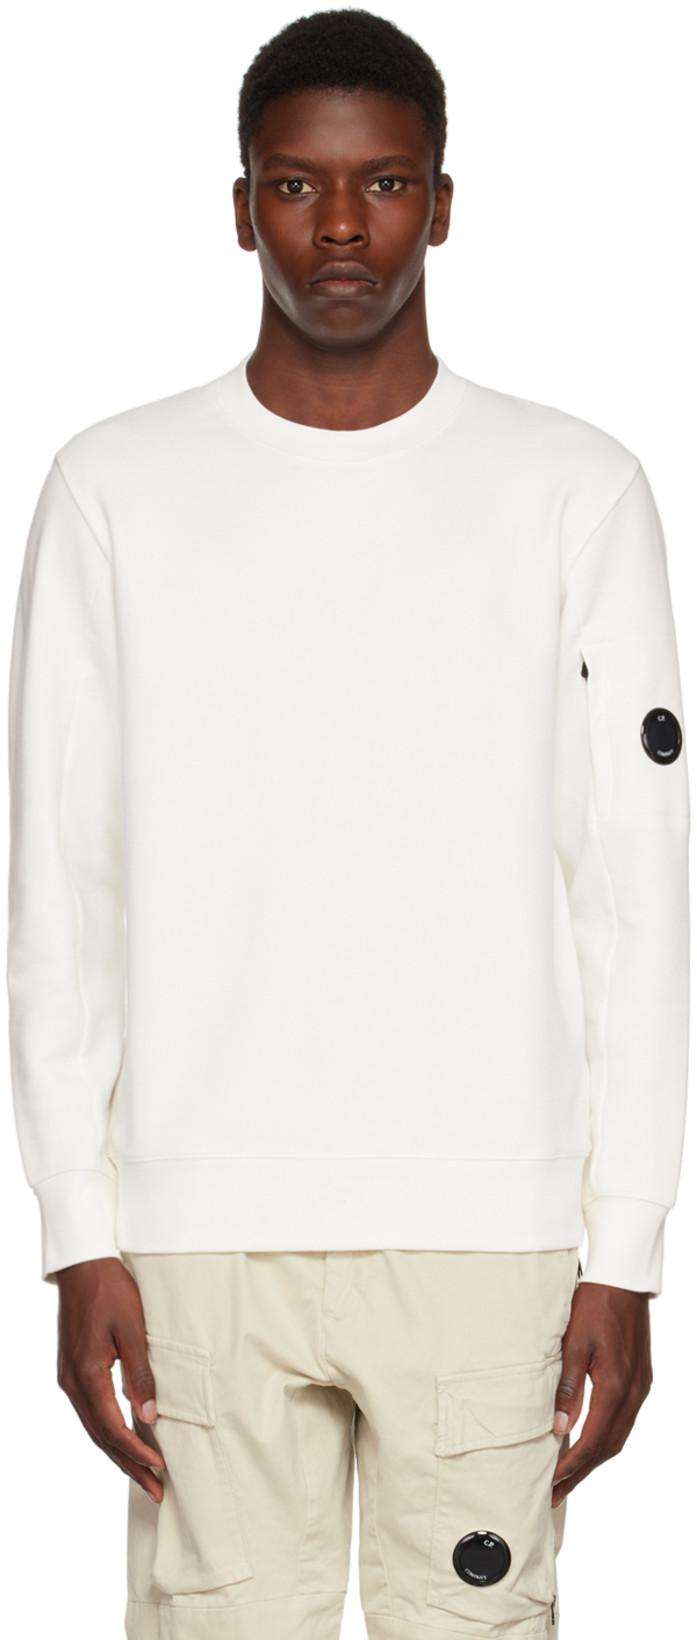 White Diagonal Raised Sweatshirt by C.P. COMPANY